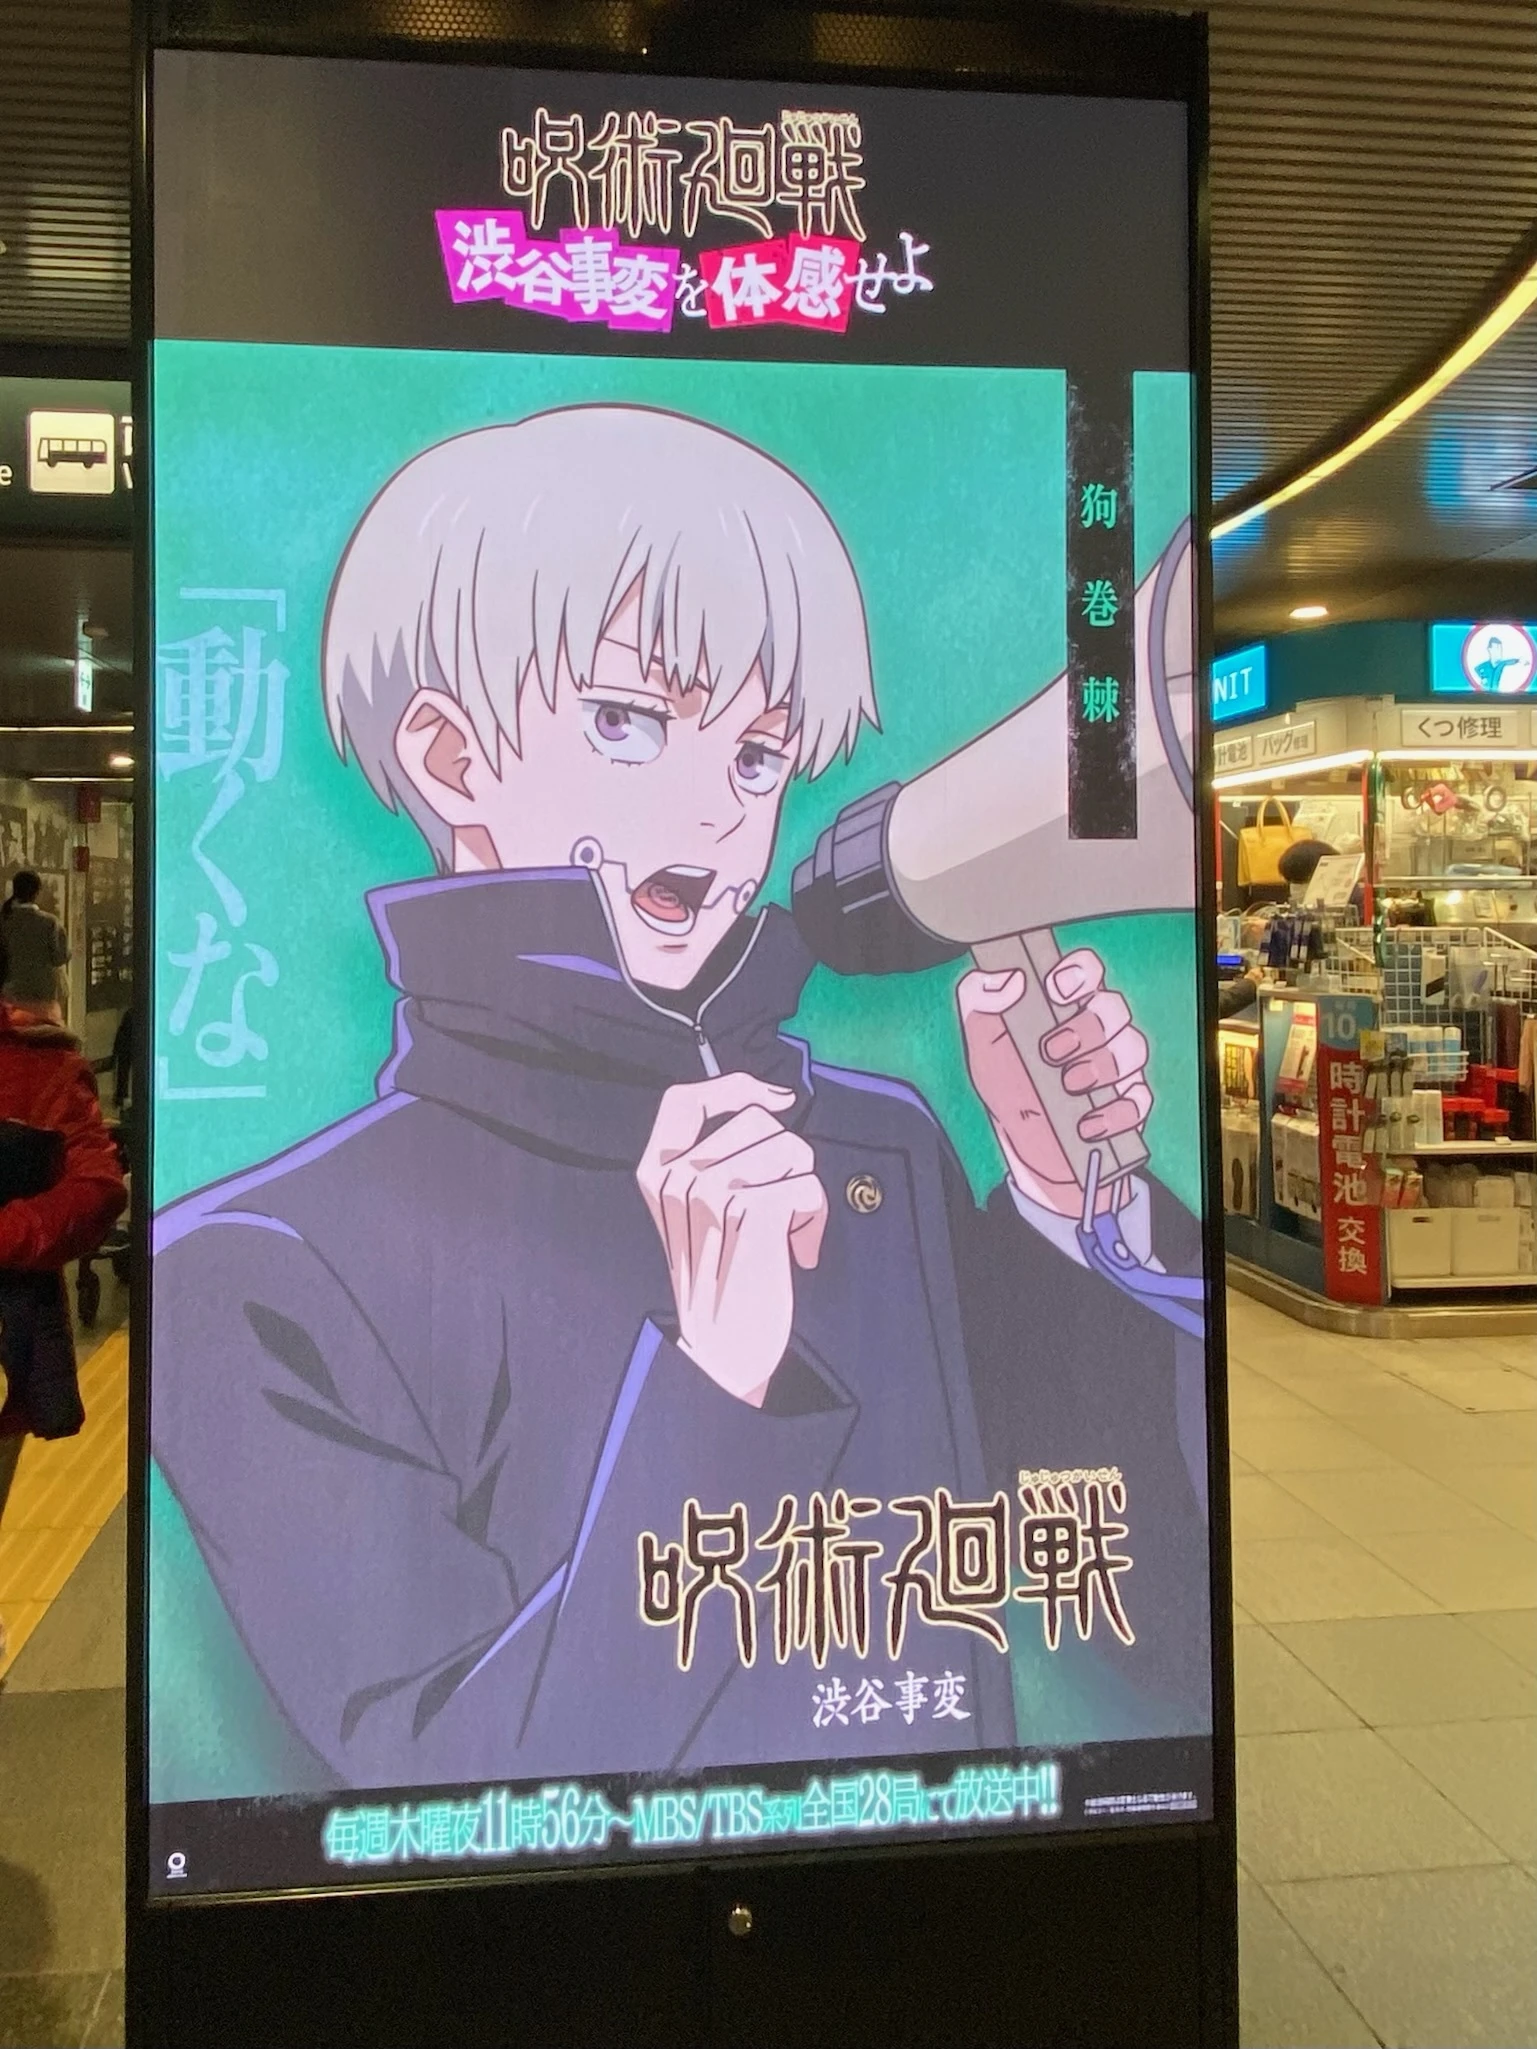 呪術廻戦 「渋谷事変を体感せよ」プロジェクト 地下広告 アニメ広告